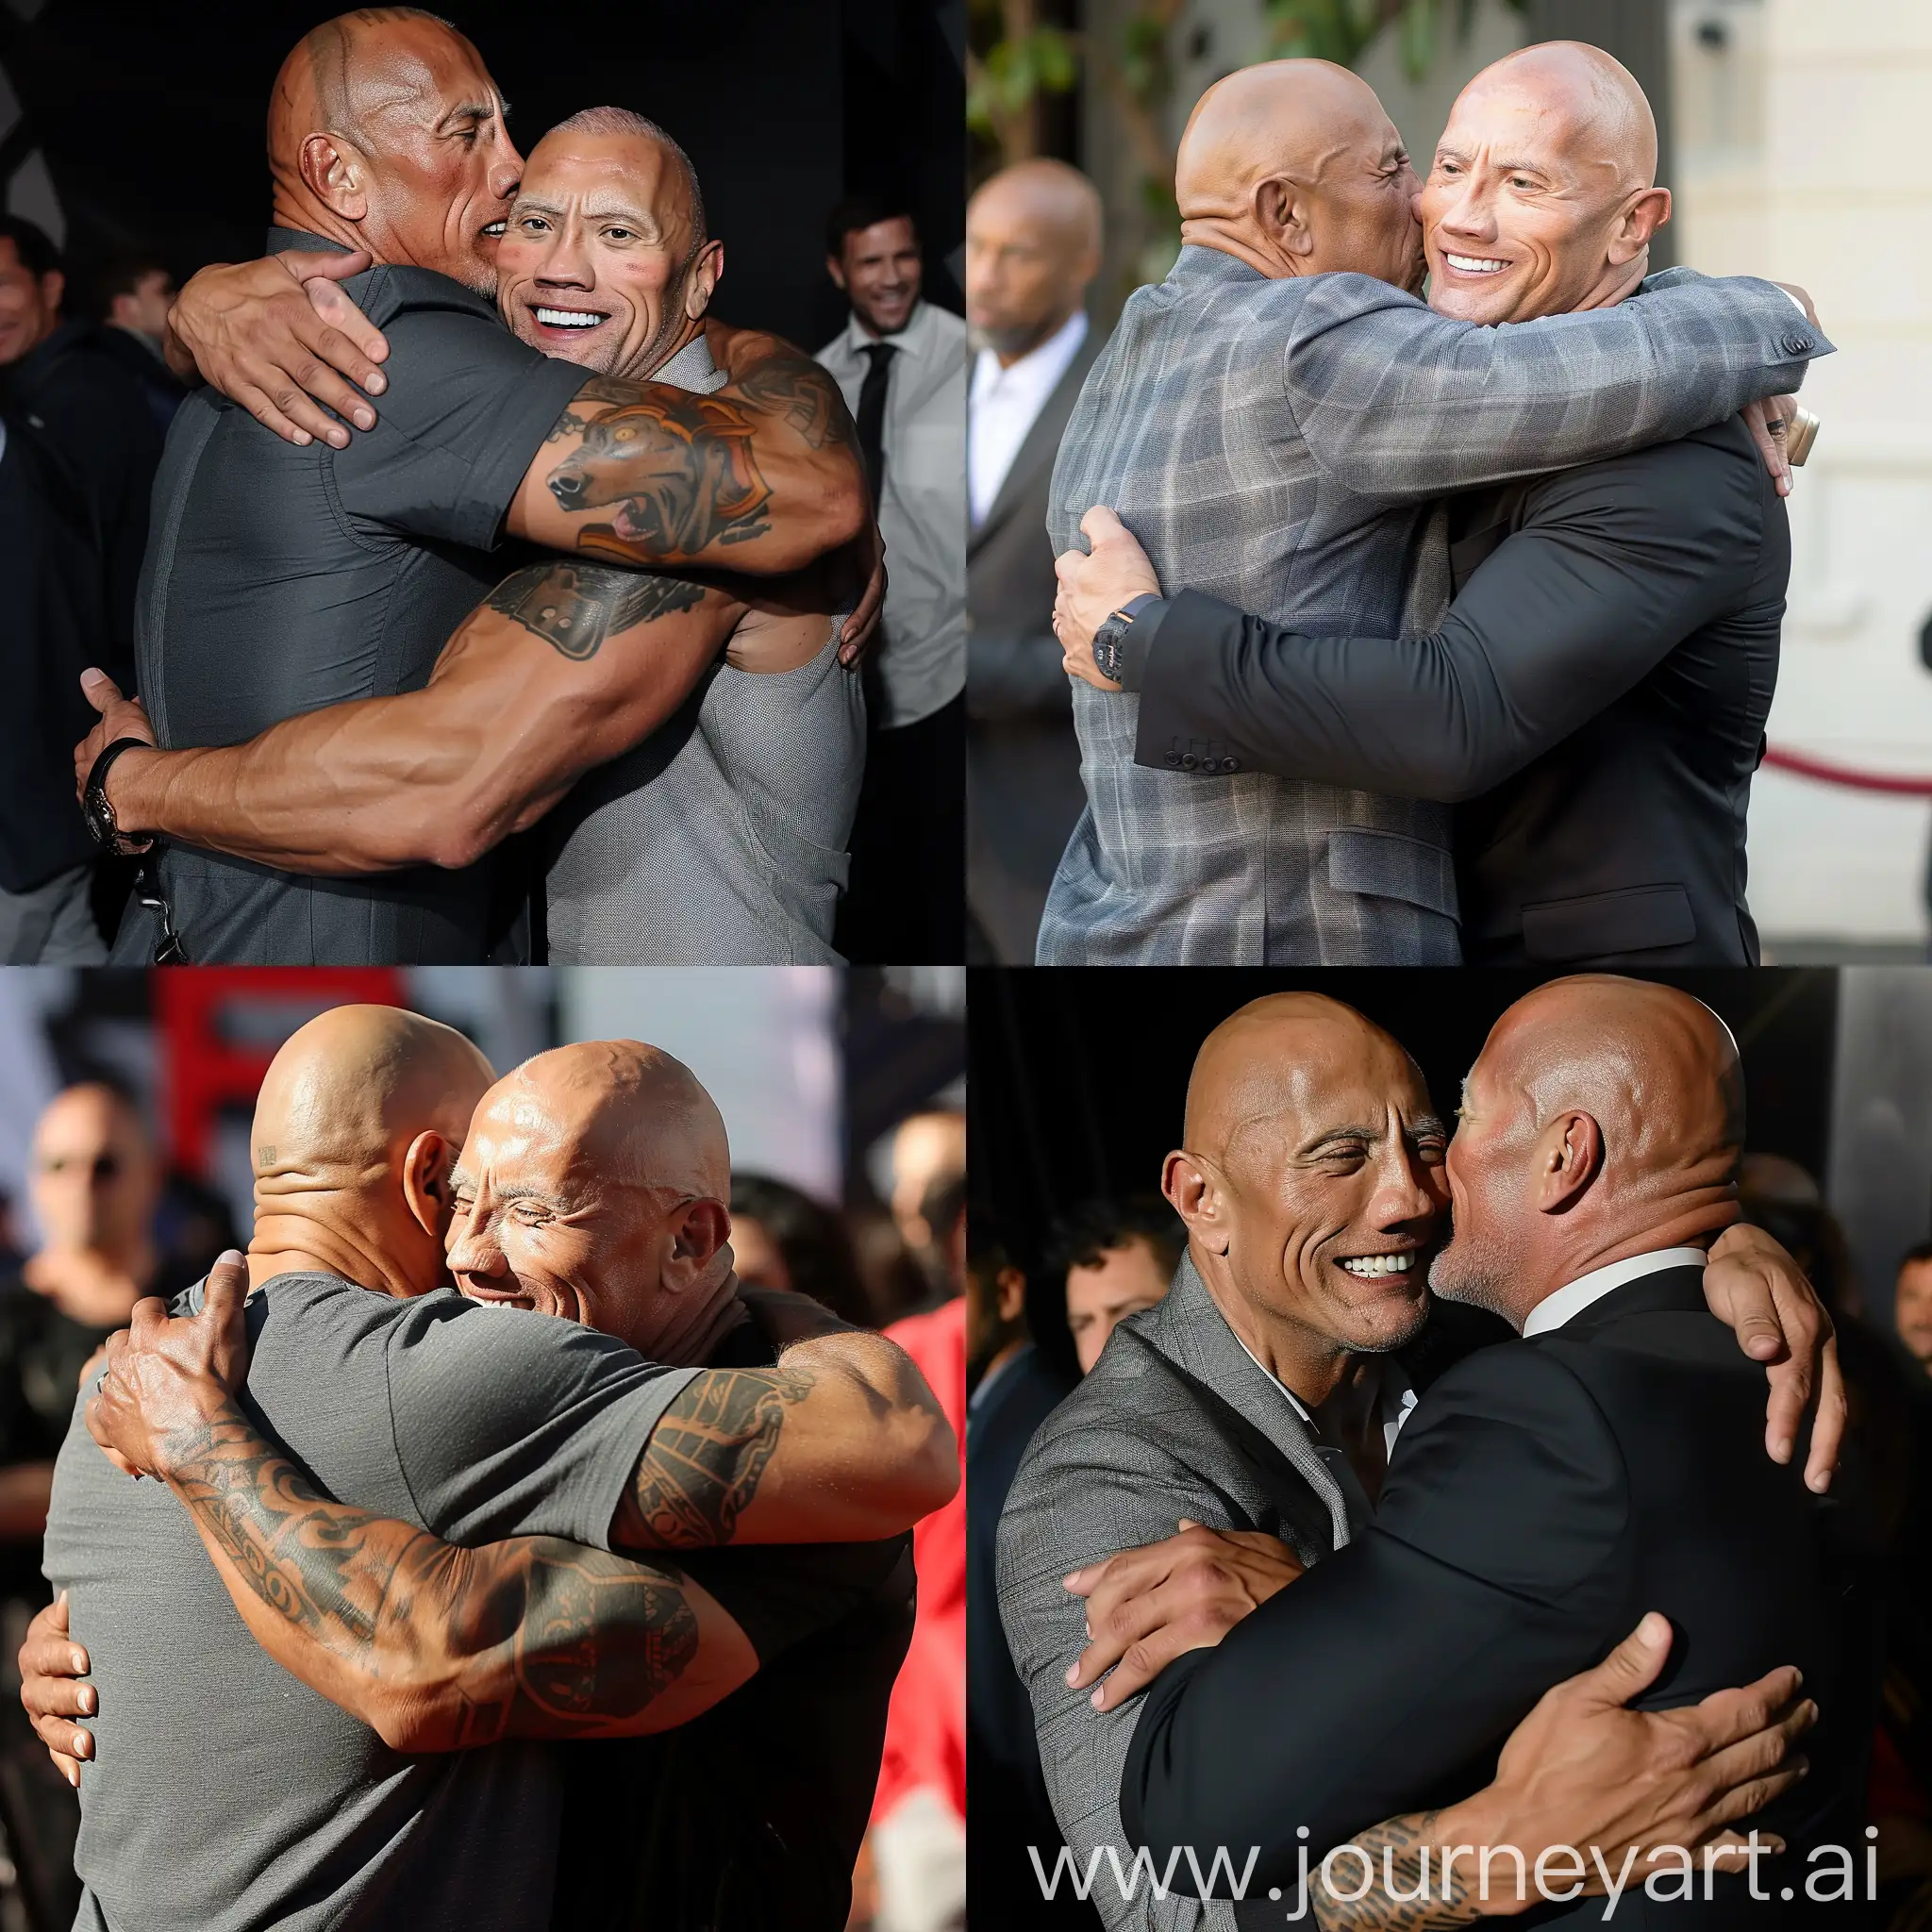 Celebrity-Embrace-Vin-Diesel-and-Dwayne-Johnson-Share-a-Heartfelt-Hug